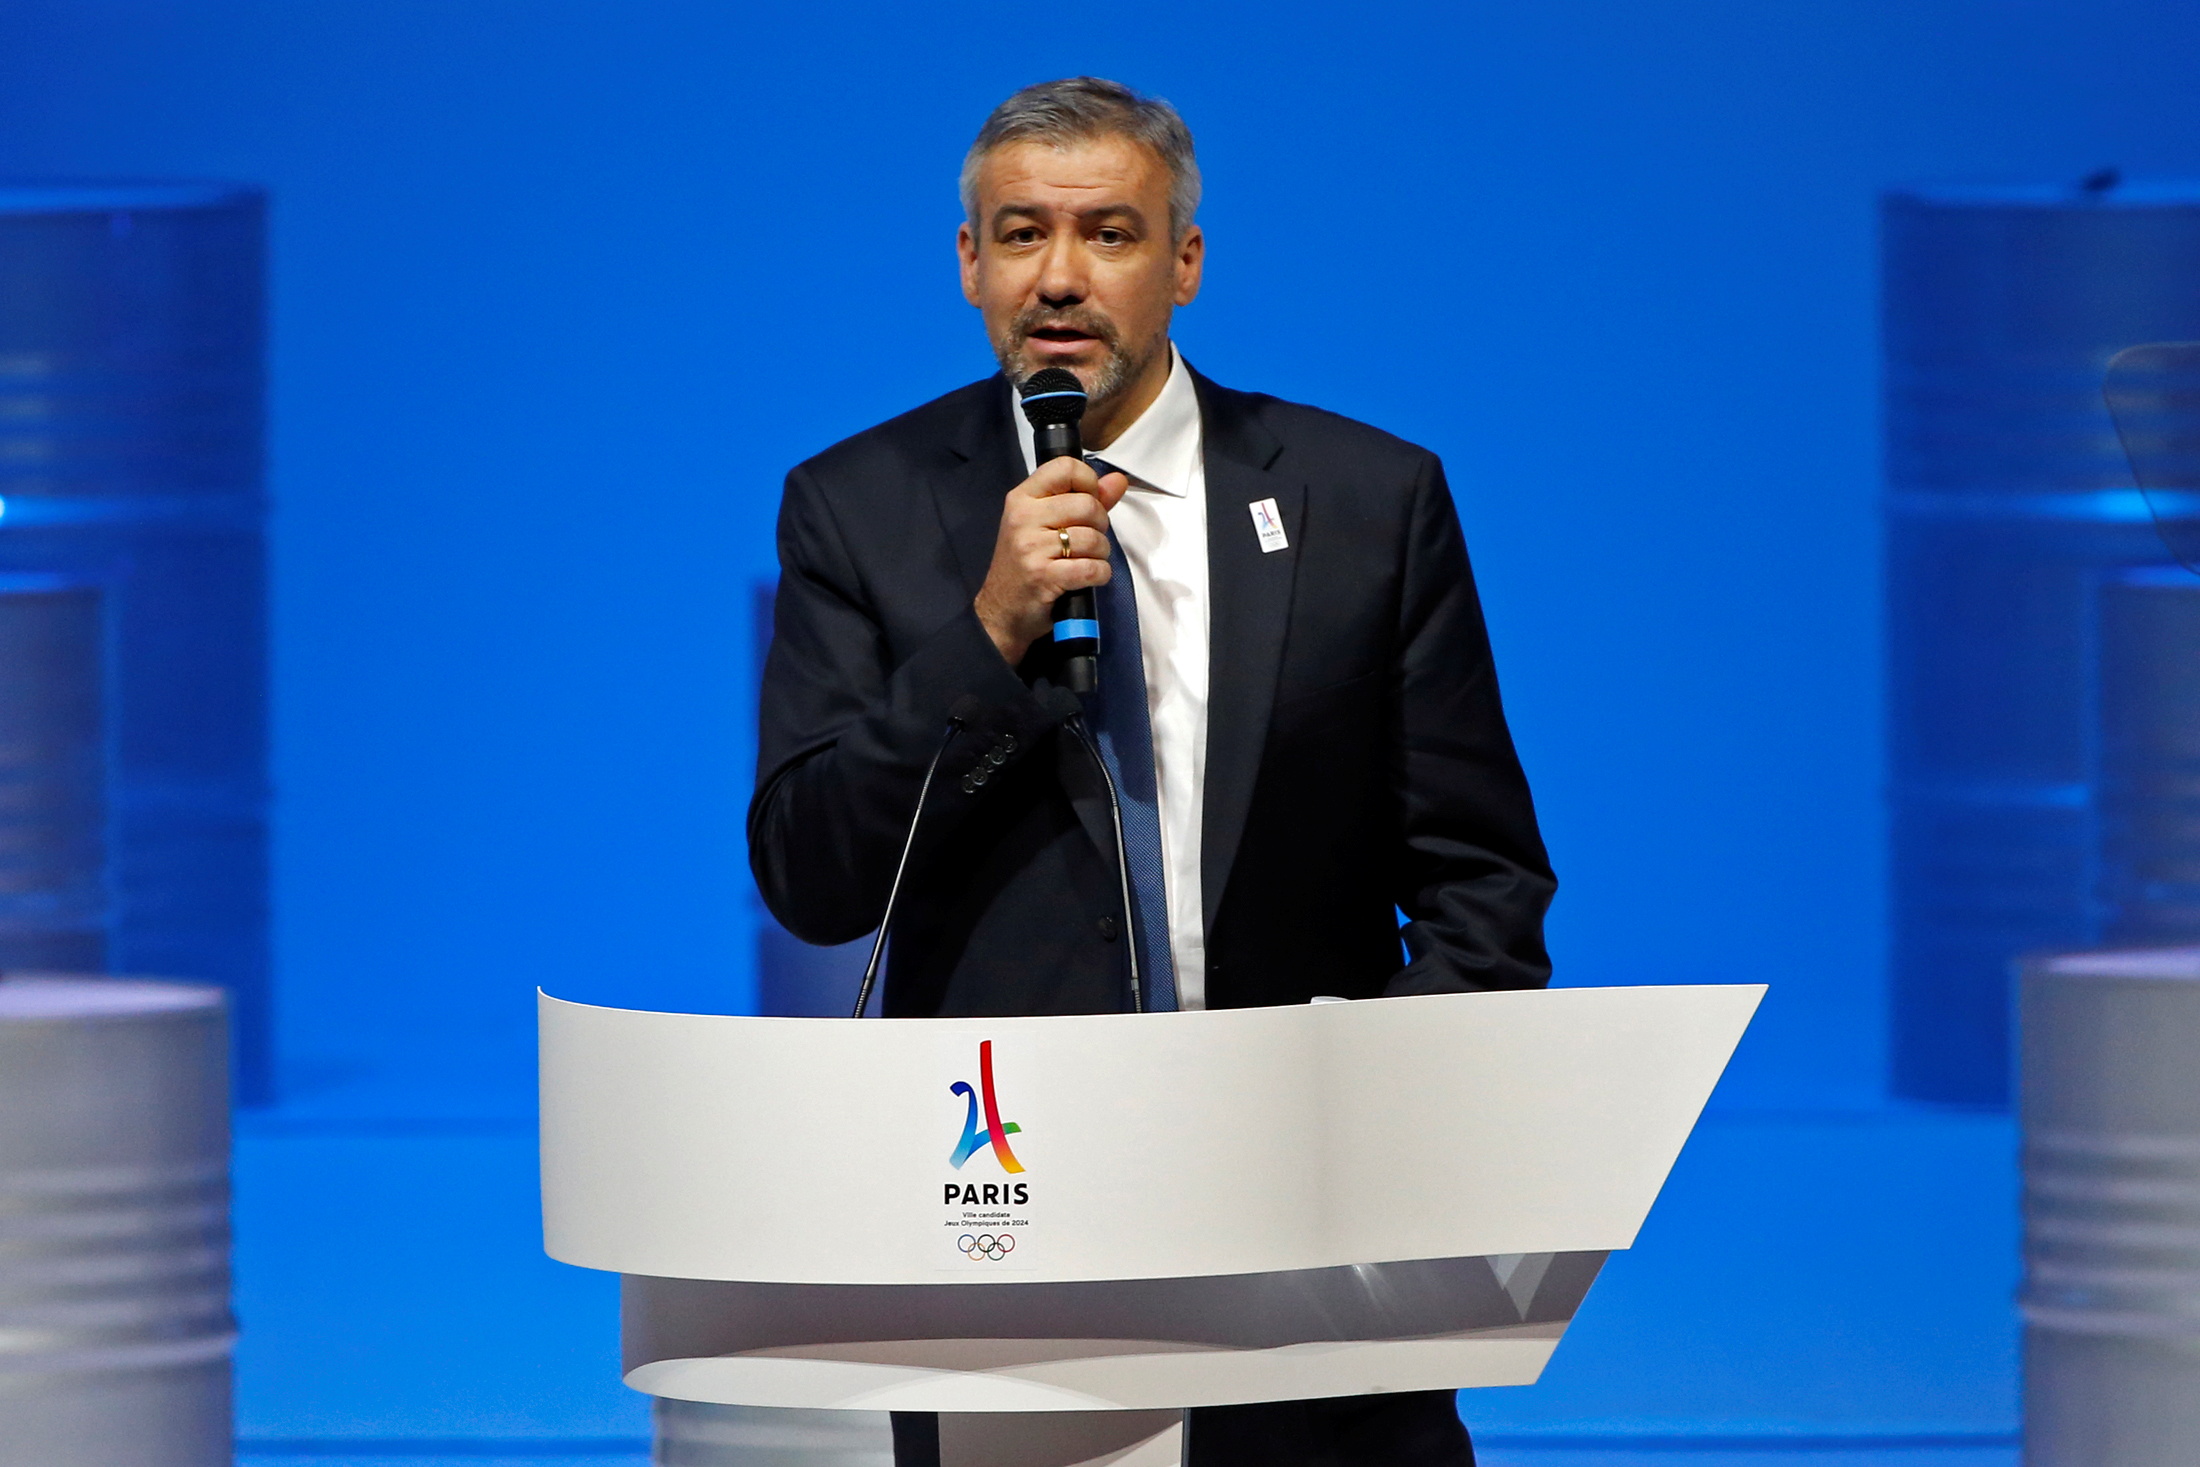   Etienne Thobois, Ketua Eksekutif Panitia Lelang Paris 2024, menghadiri presentasi pencalonan Paris untuk Olimpiade dan Paralimpiade 2024 di Paris, Prancis, 17 Februari 2016. 